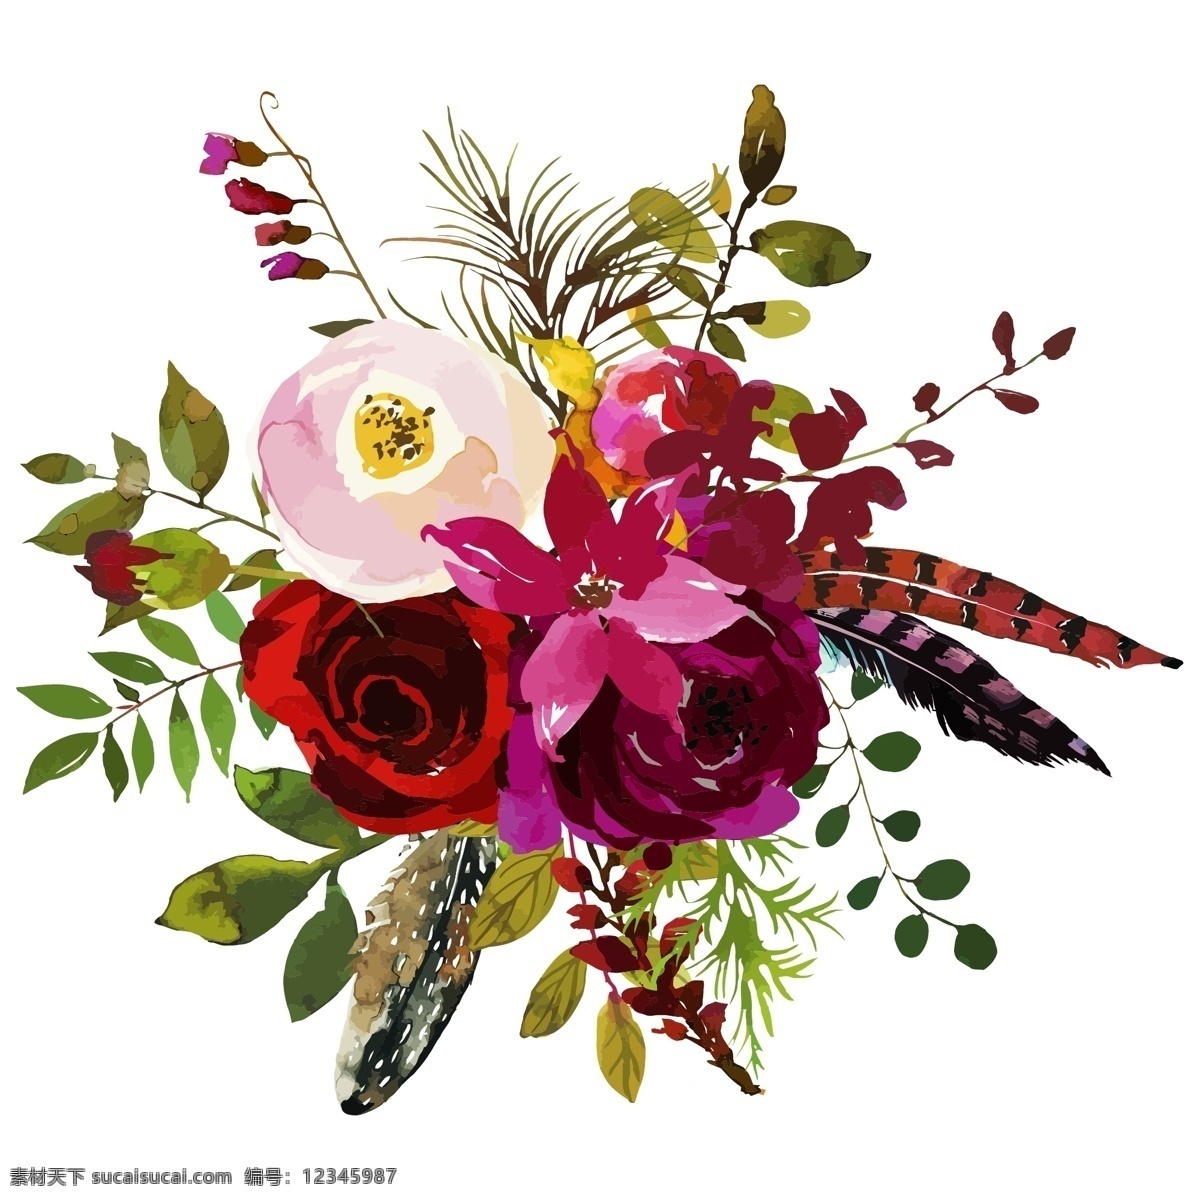 水彩 创意 花朵 植物 装饰 水彩植物花朵 花朵花圈 装饰图案 婚礼装饰 玫瑰花 边框装饰 树枝树叶 花束装饰